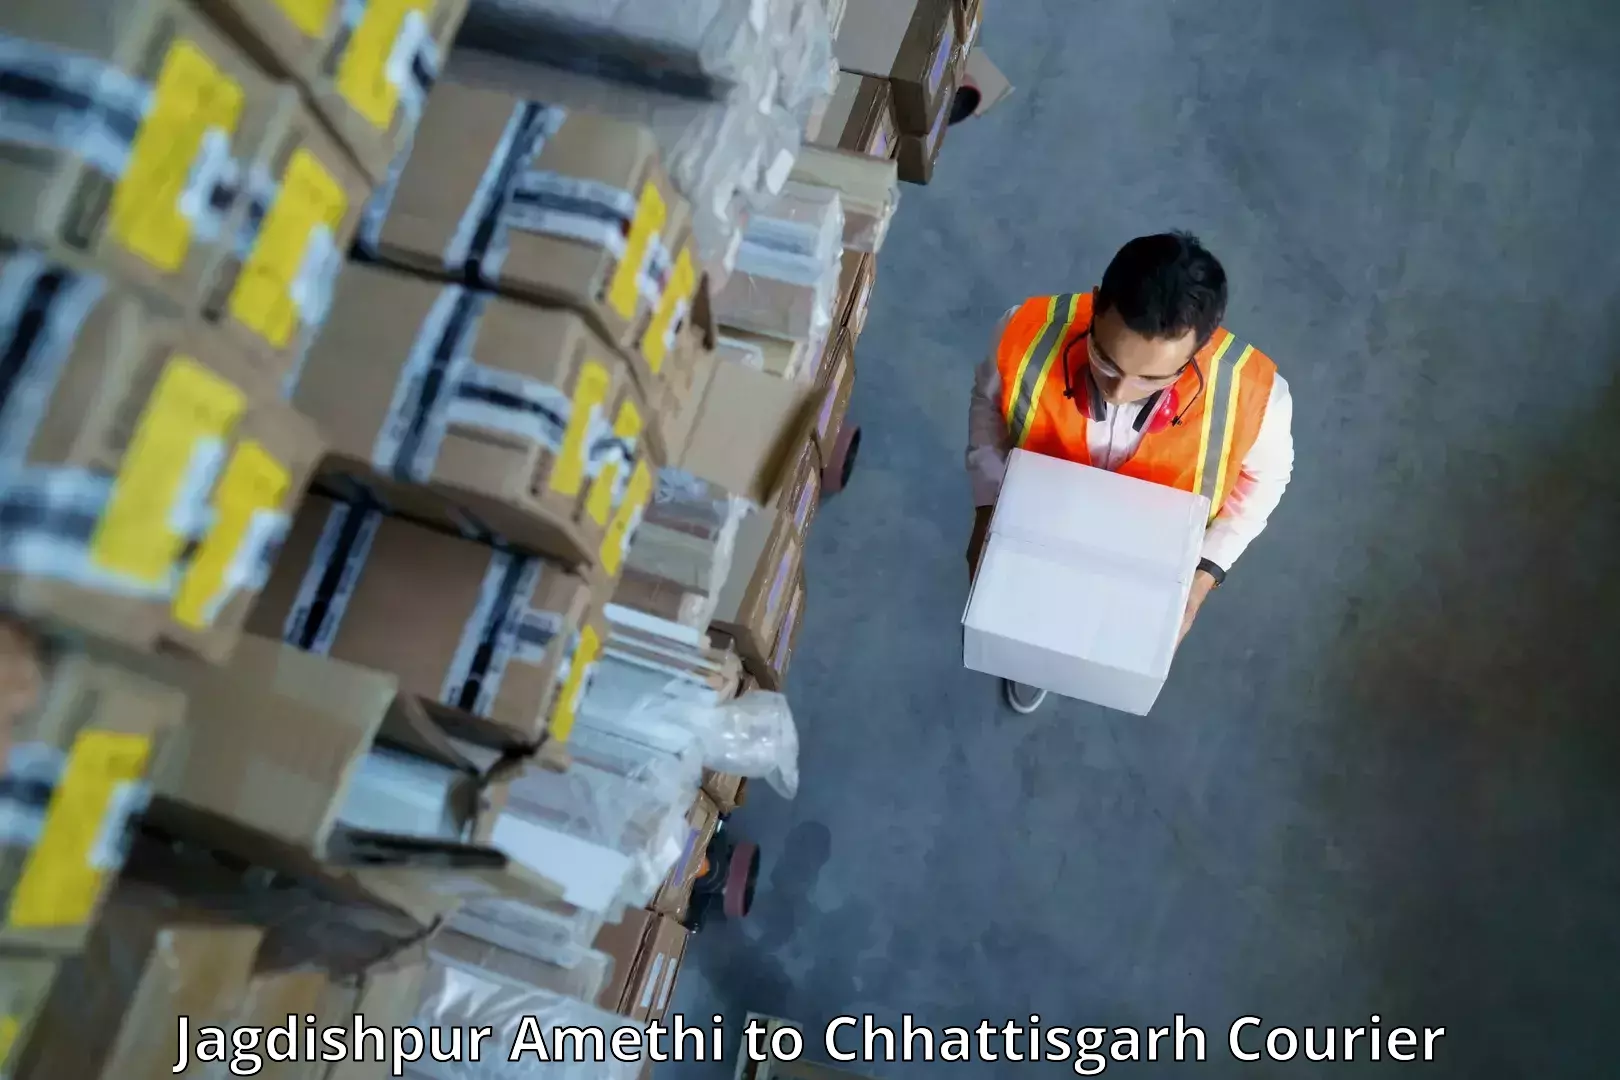 Cross-border shipping Jagdishpur Amethi to Chhattisgarh